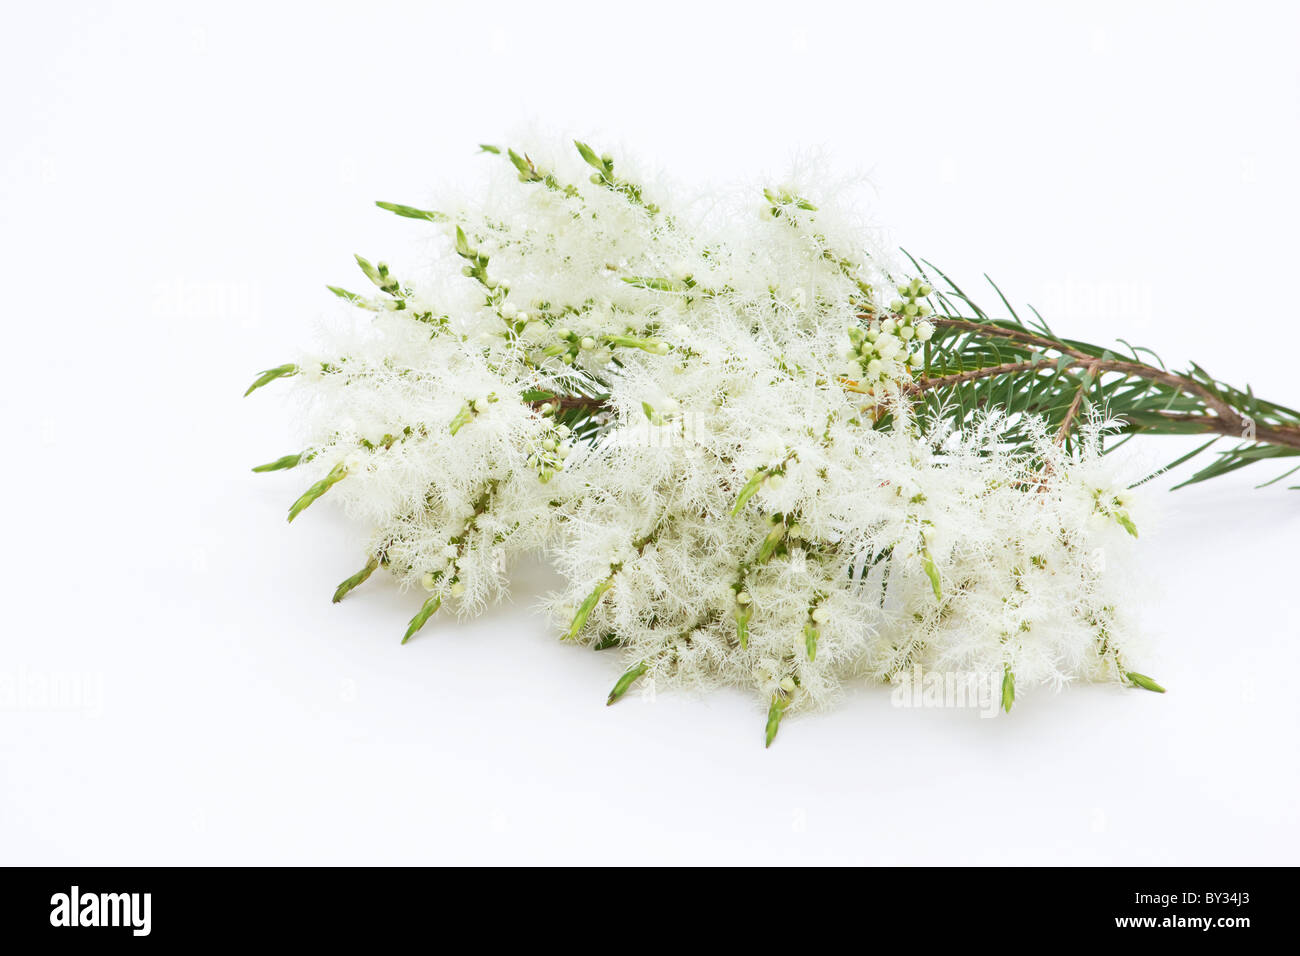 Arbre à thé (melaleuca alternifolia) fleurs sur fond blanc Banque D'Images